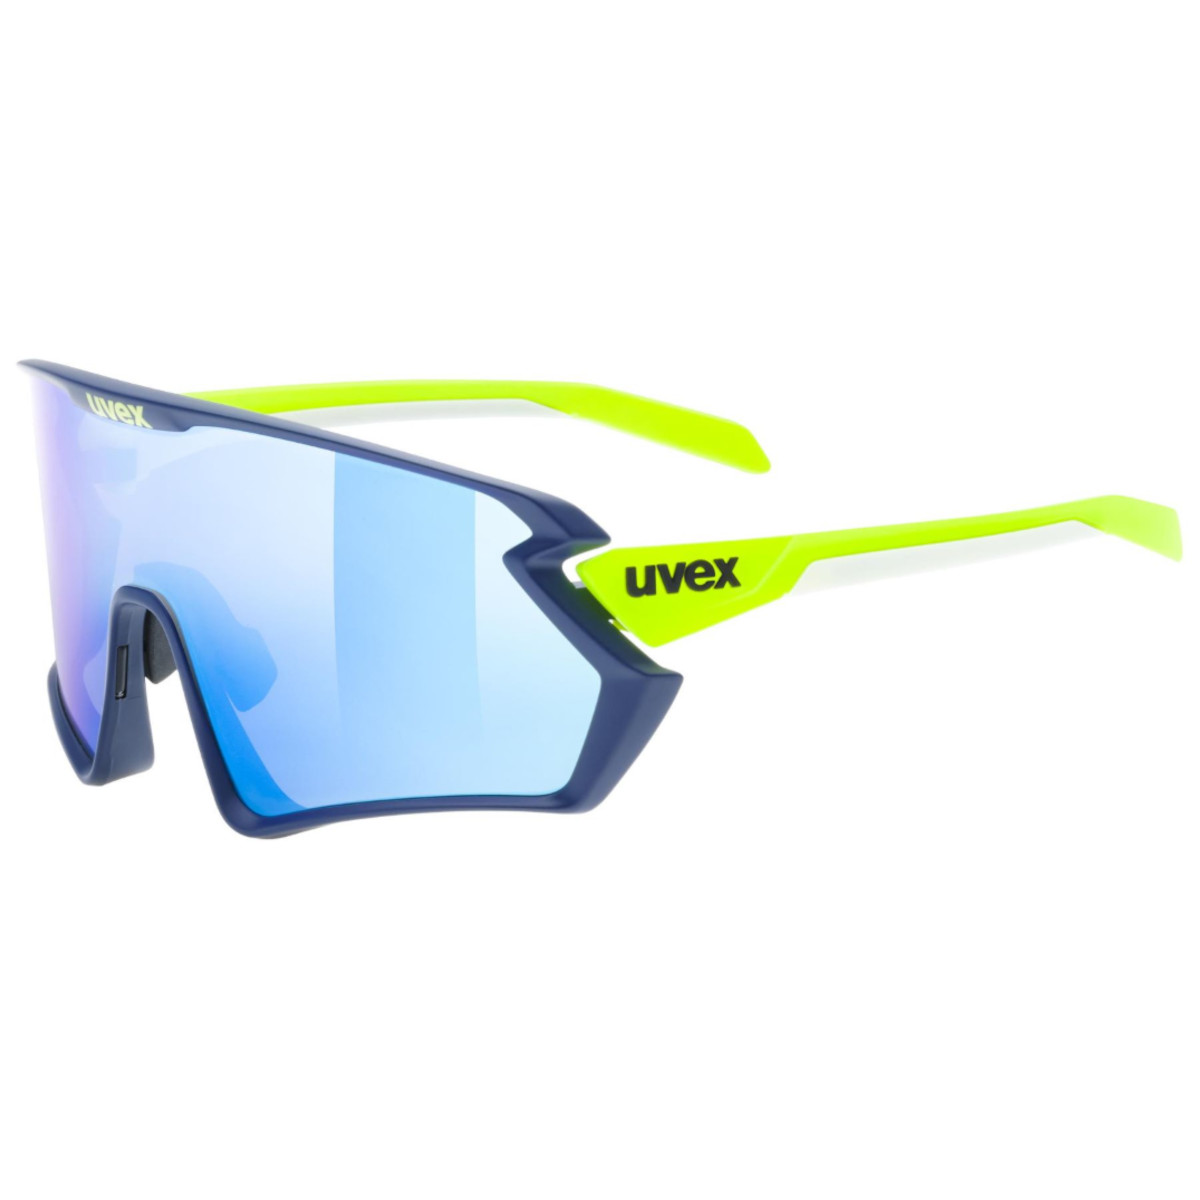 Produktbild von Uvex sportstyle 231 2.0 Brille - blue-yellow matt/mirror blue